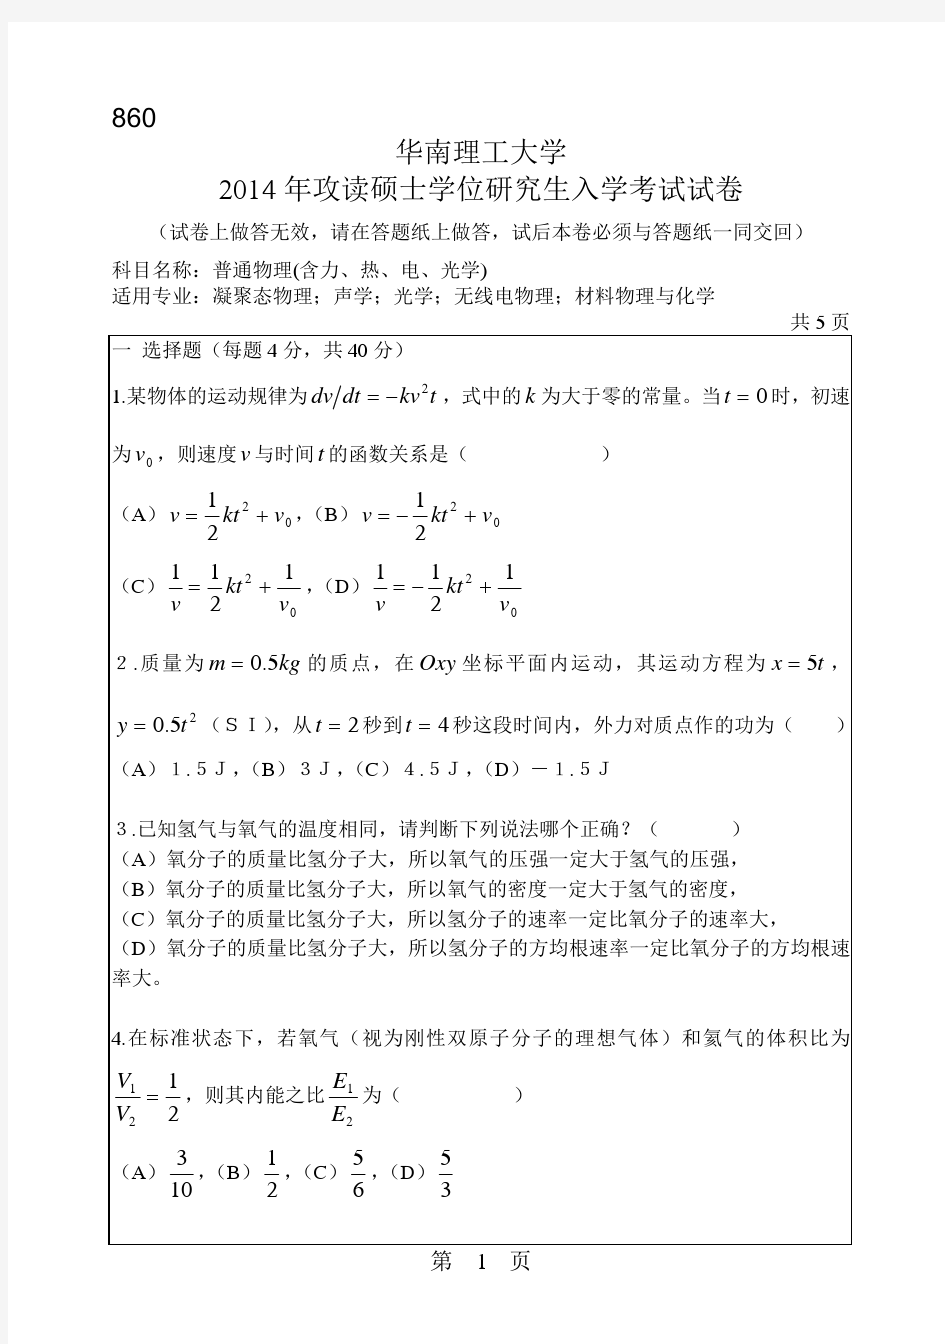 华南理工大学2014年《860普通物理》考研专业课真题试卷